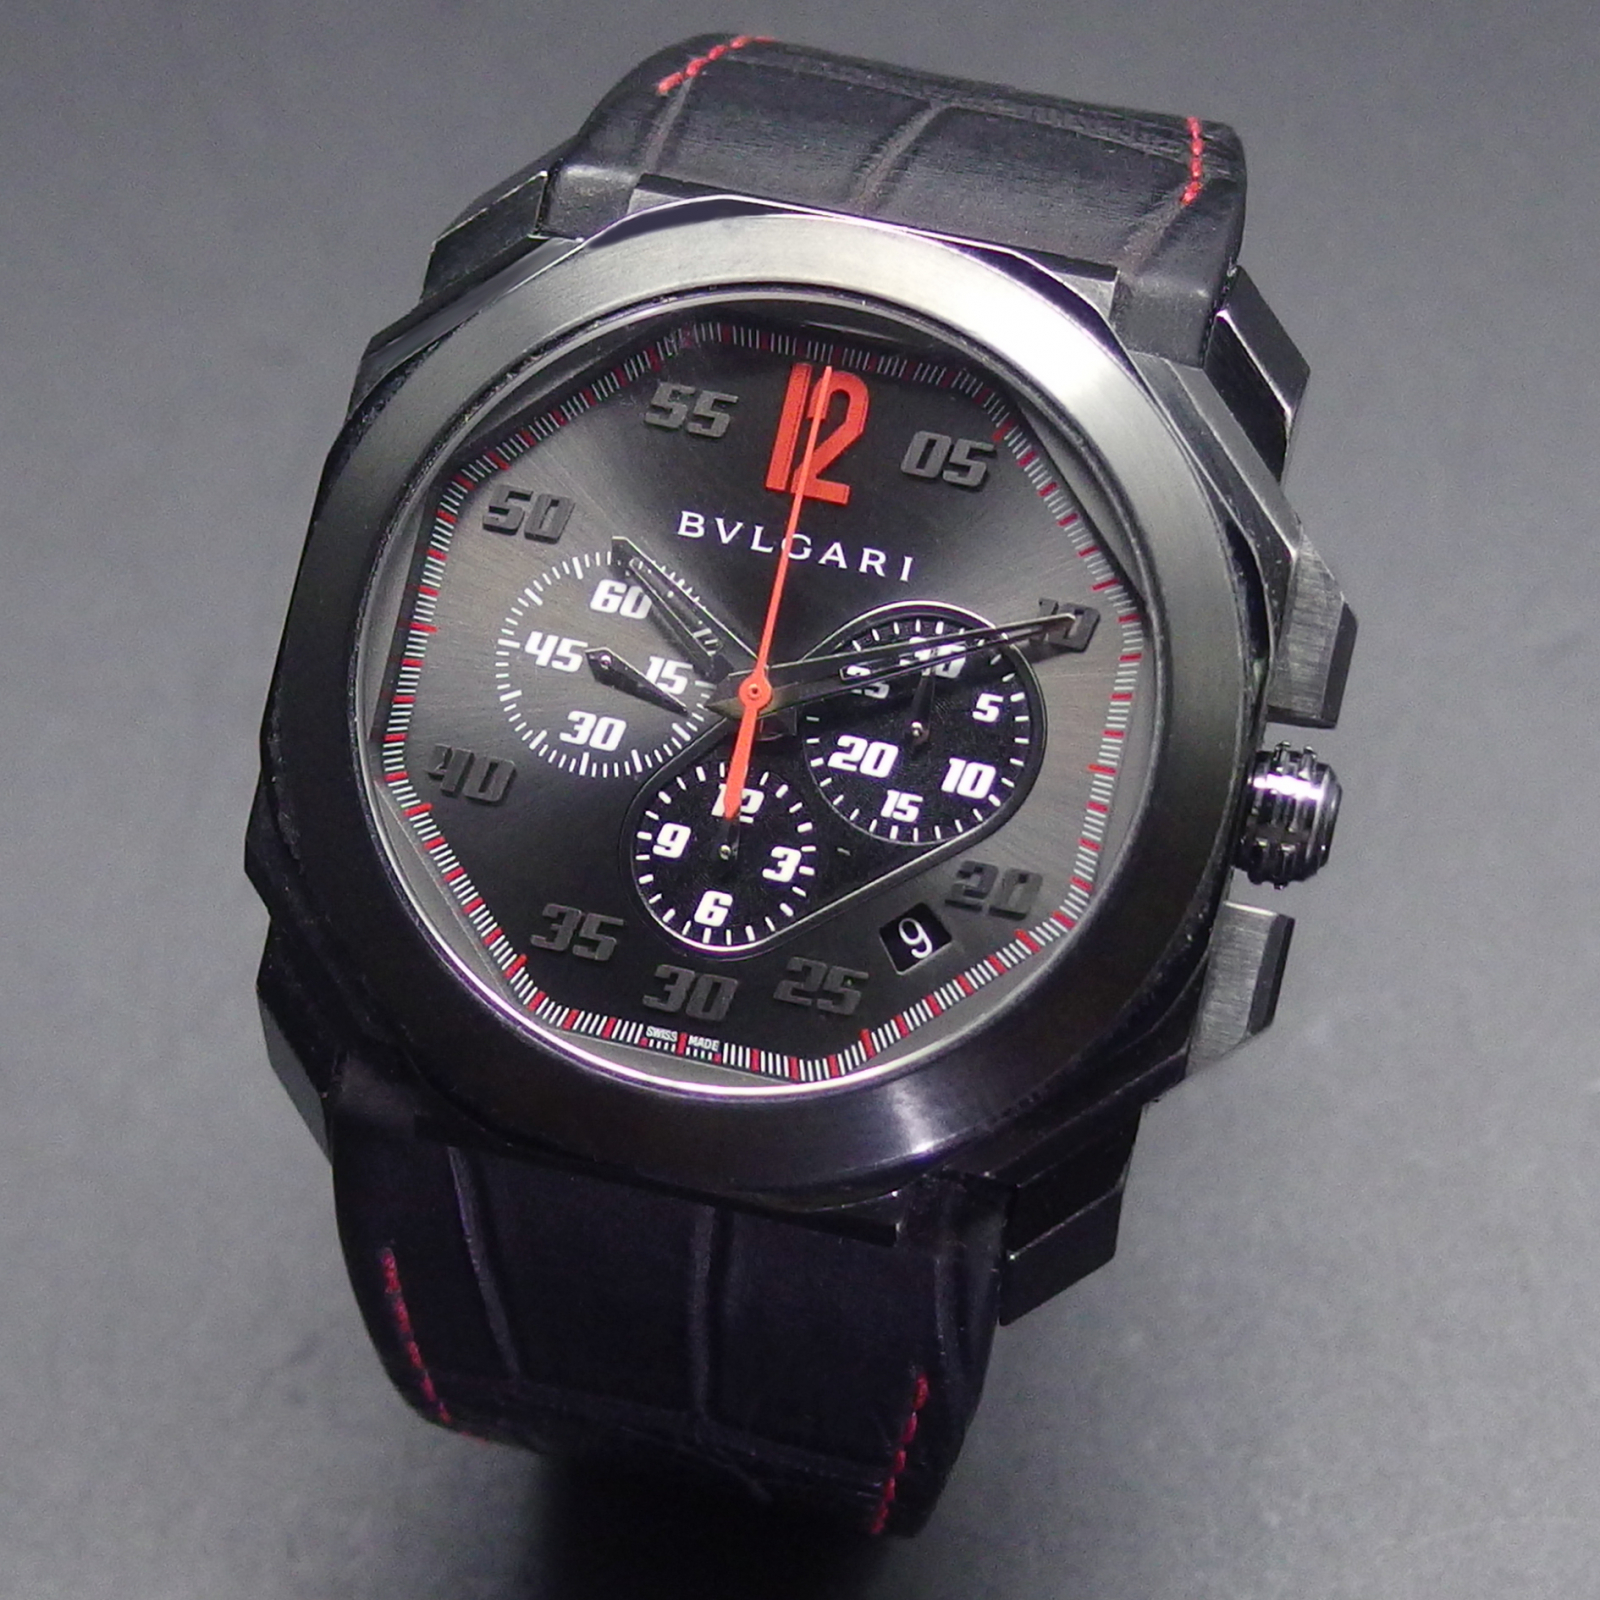 【117749】BVLGARI ブルガリ  BG041SCH オクトヴェロッチェシモクロノ グレーダイヤル SS/レザー（クロコ） 自動巻き 純正ボックス 腕時計 時計 WATCH メンズ 男性 男 紳士